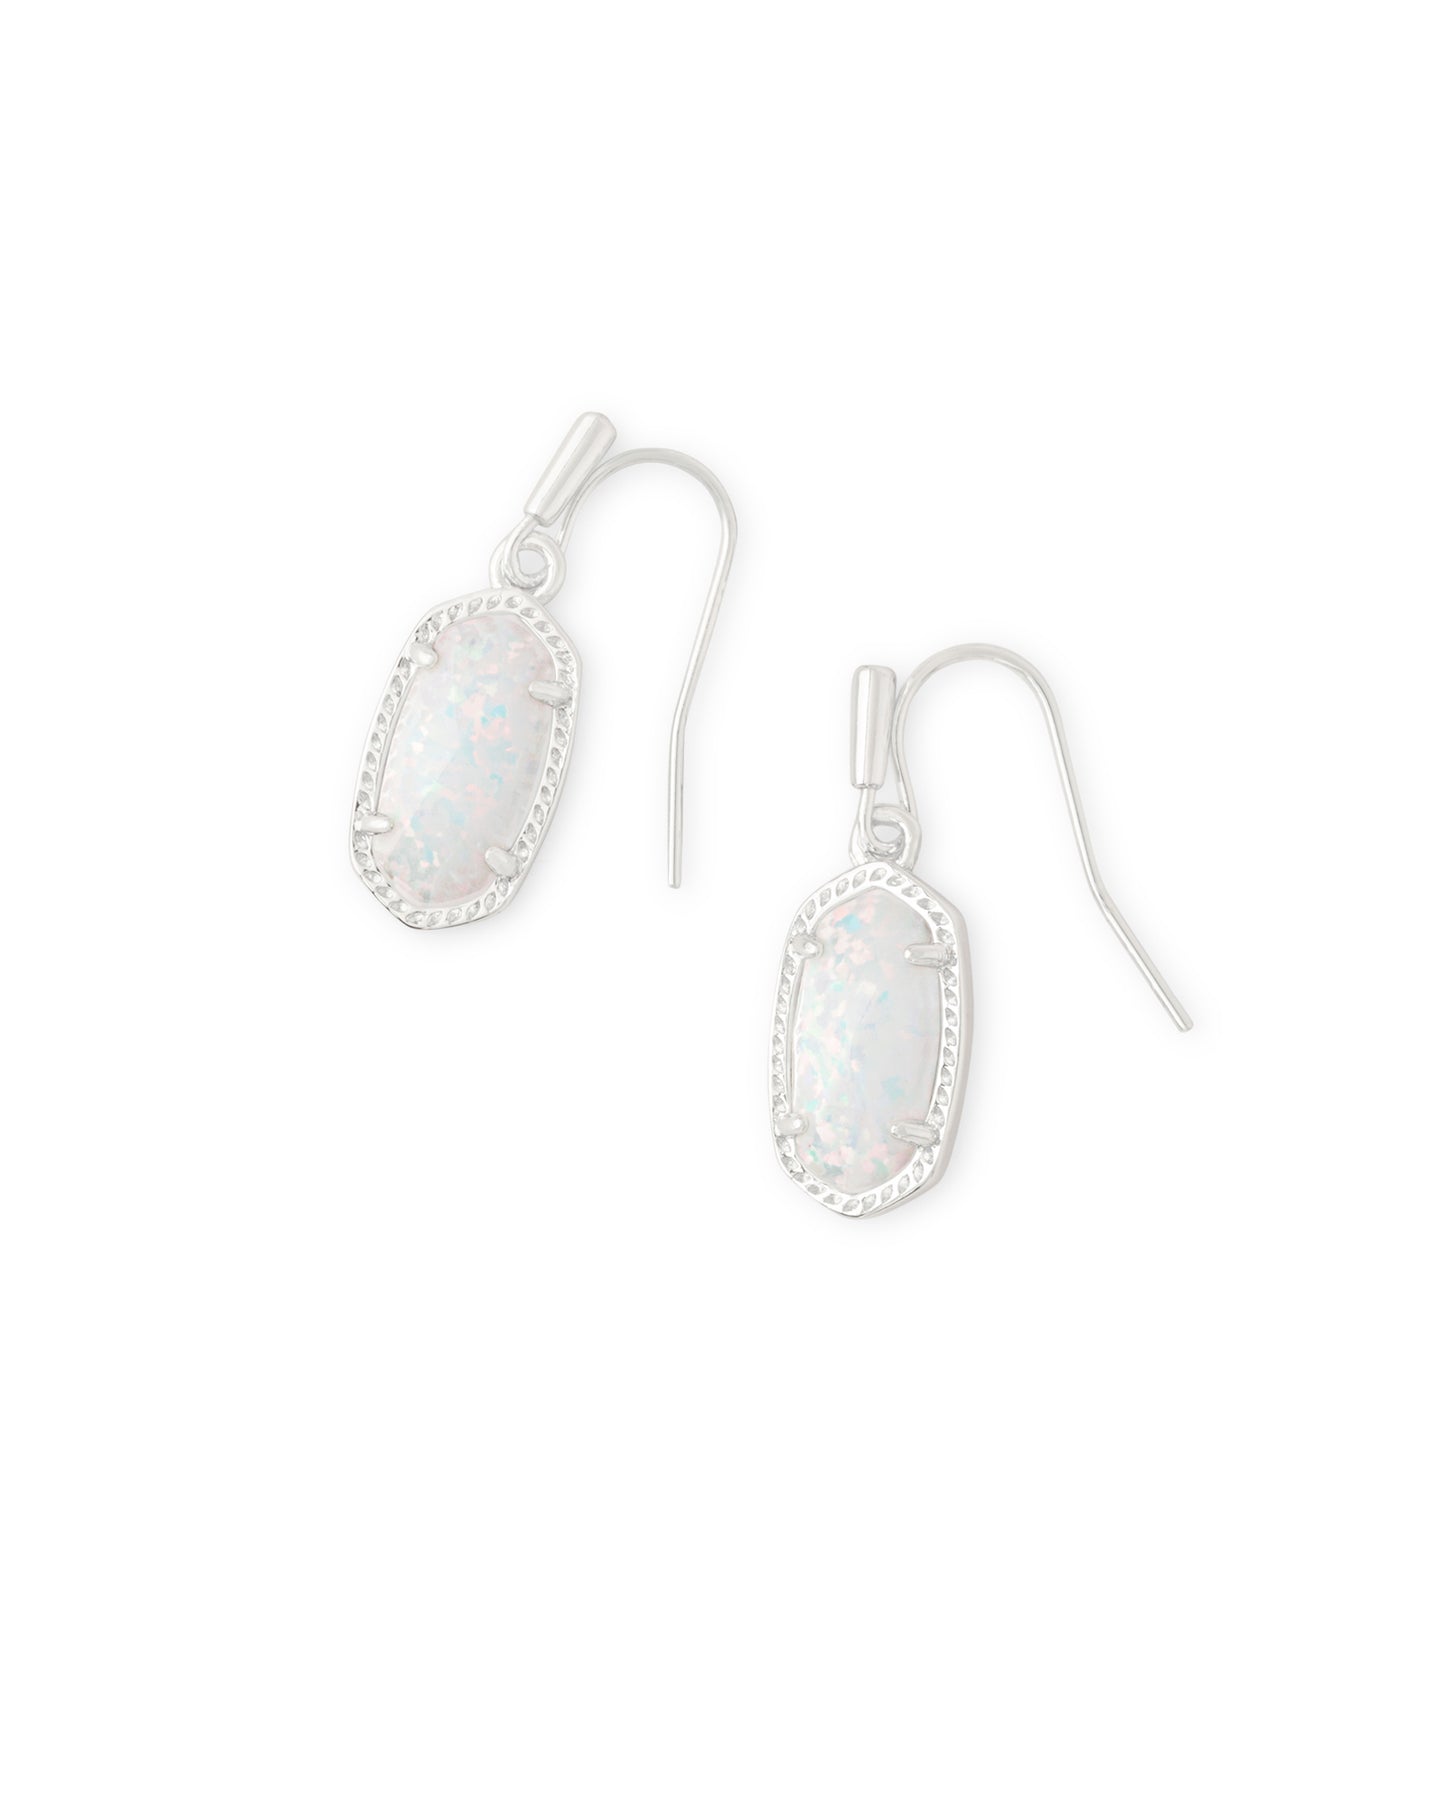 Kendra Scott Lee Drop Earrings - Rhodium White Opal